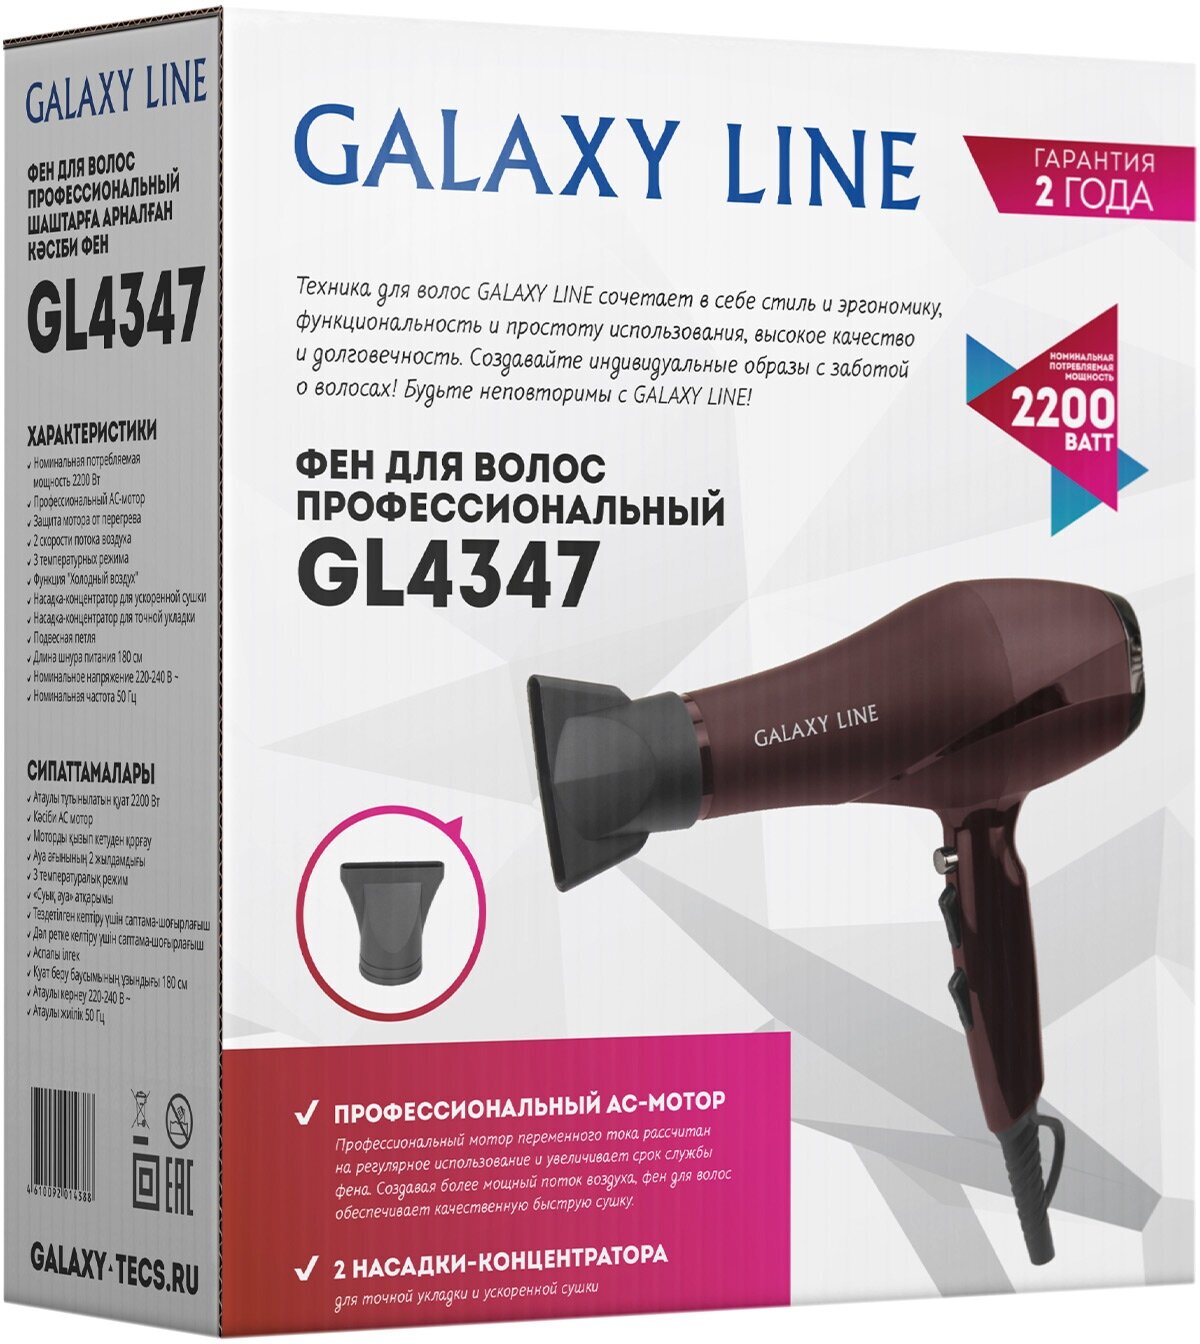 Фен для волос GALAXY LINE GL 4347 - фото №7